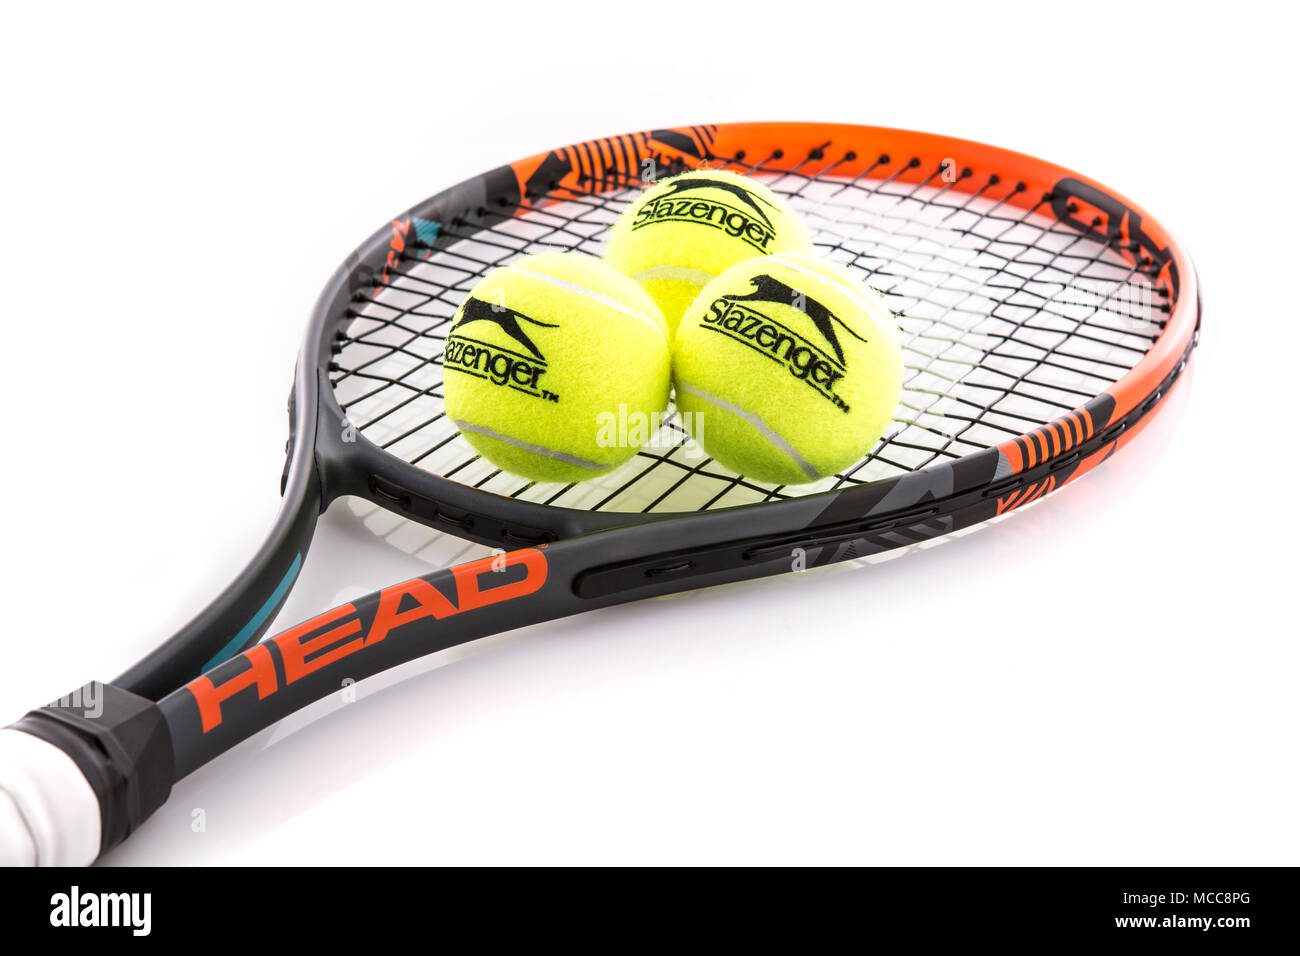 SWINDON, Regno Unito - 15 Aprile 2018: Testa Racchetta da Tennis e Slazenger sfera su sfondo bianco Foto Stock